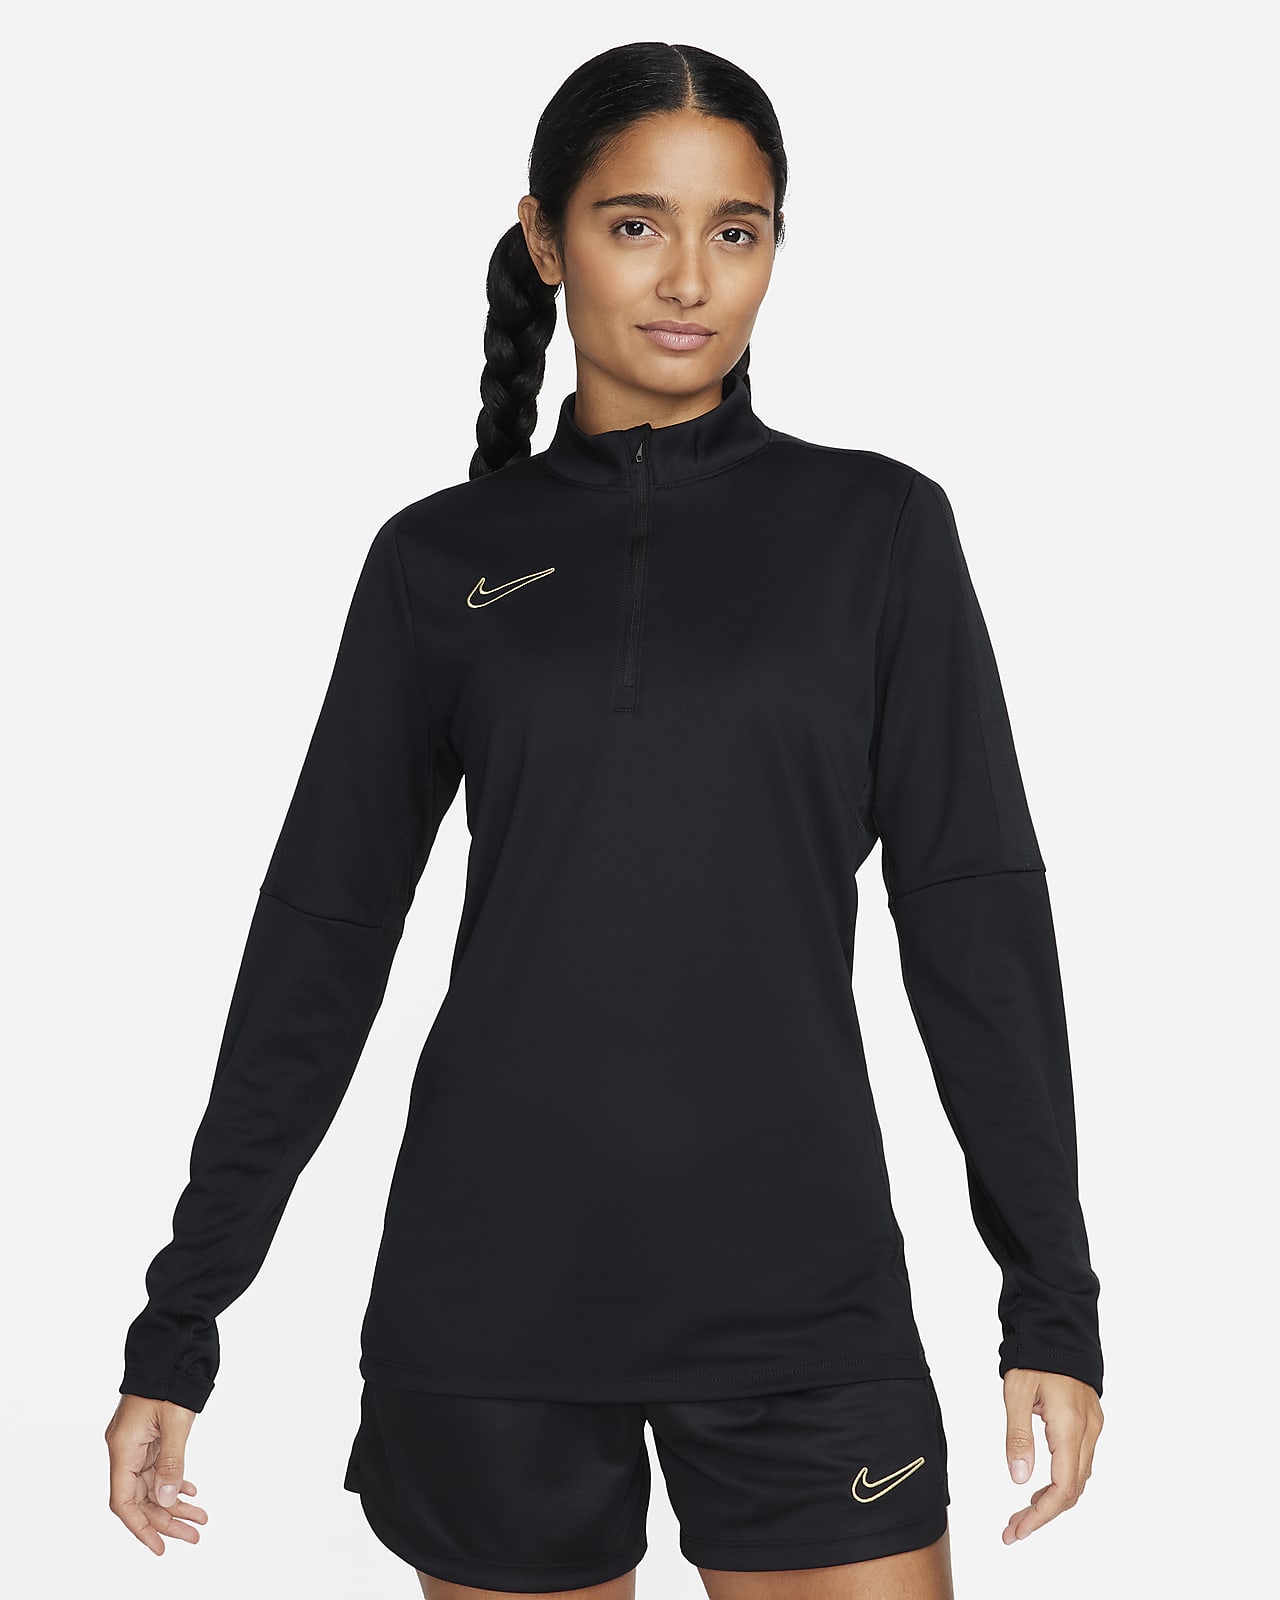 Γυναικεία ποδοσφαιρική μπλούζα προπόνησης Nike Dri-FIT Academy